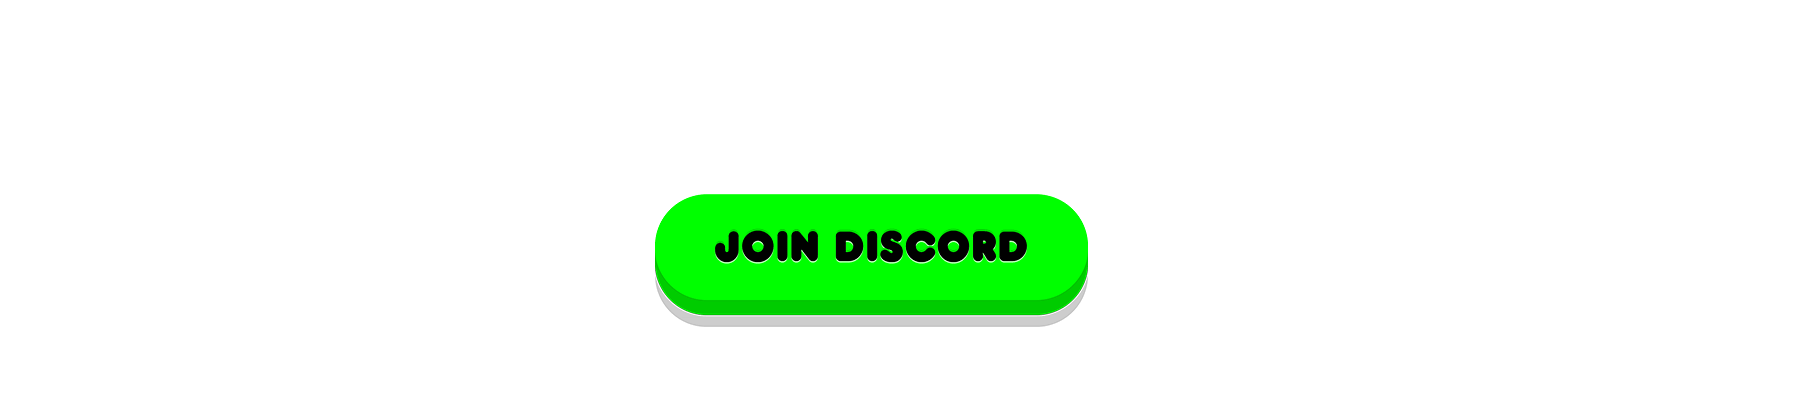 Discord CTA button